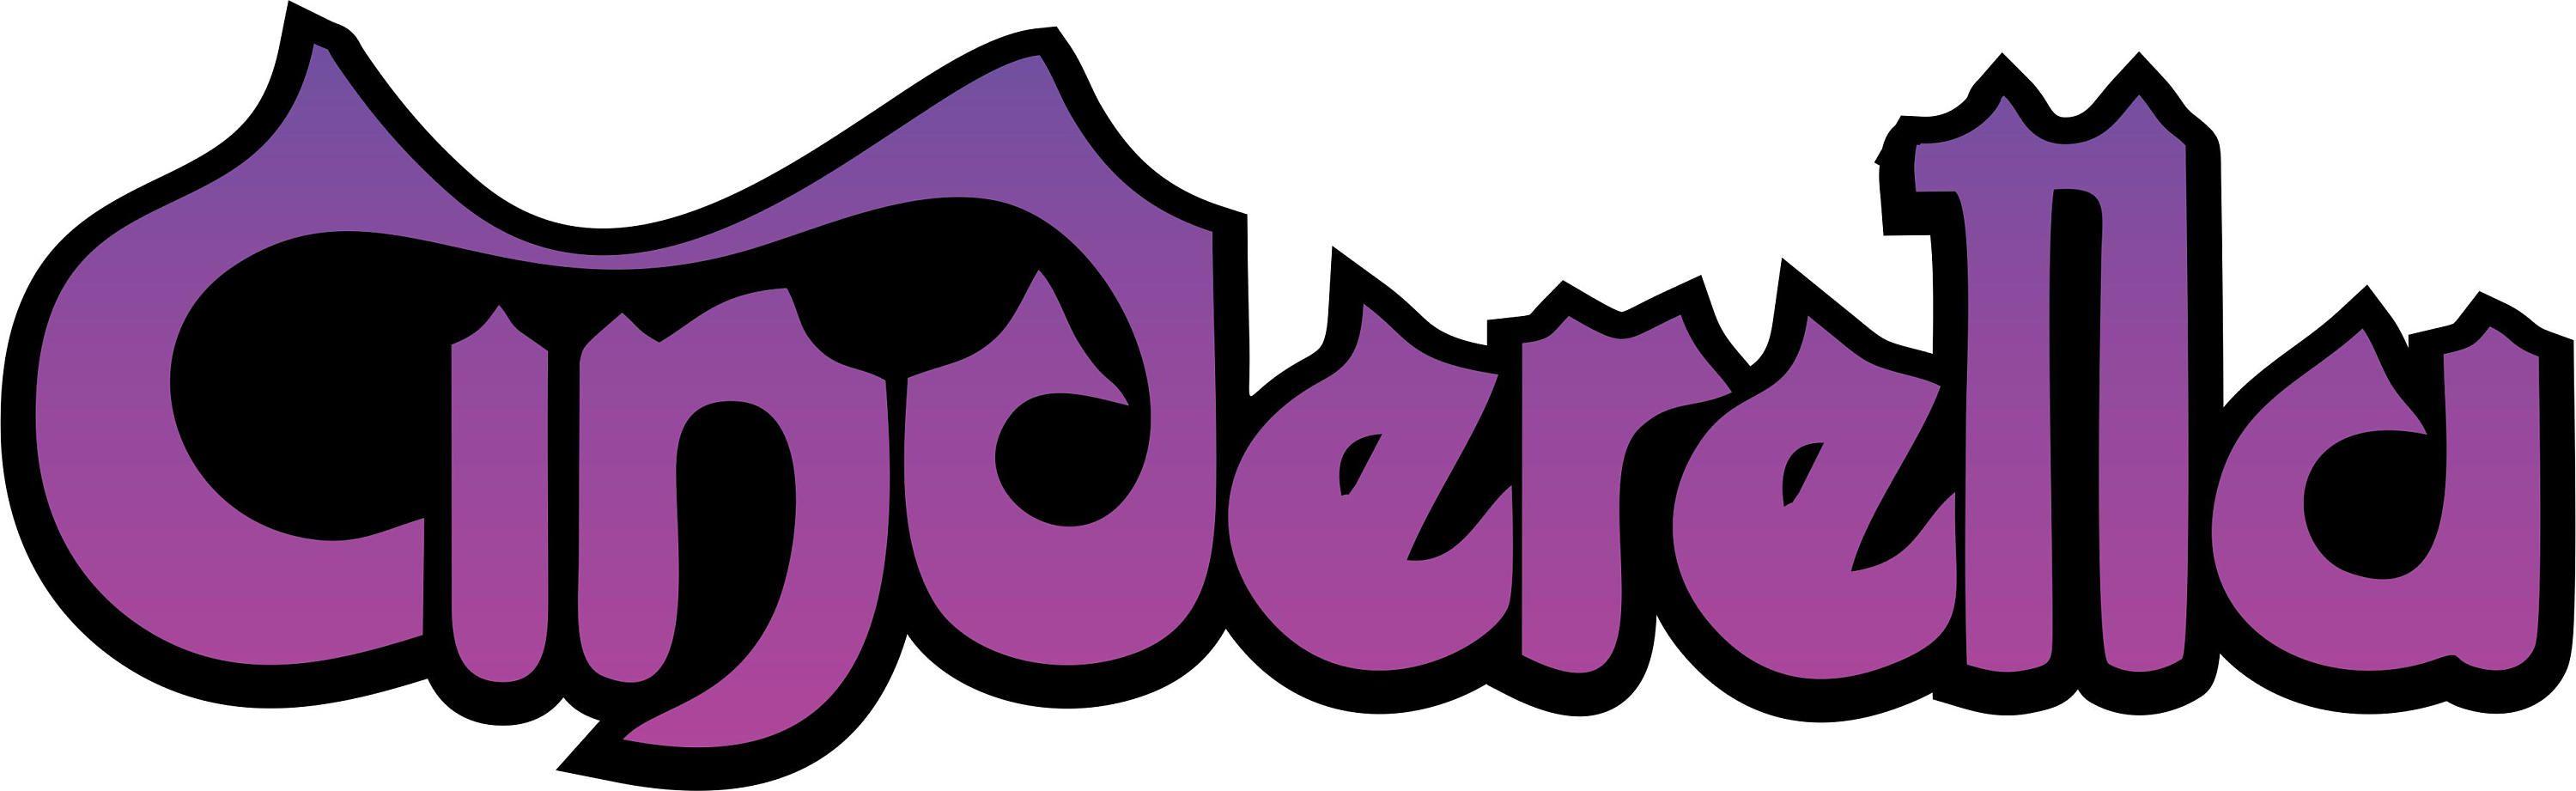 Cinderella 2 Logo